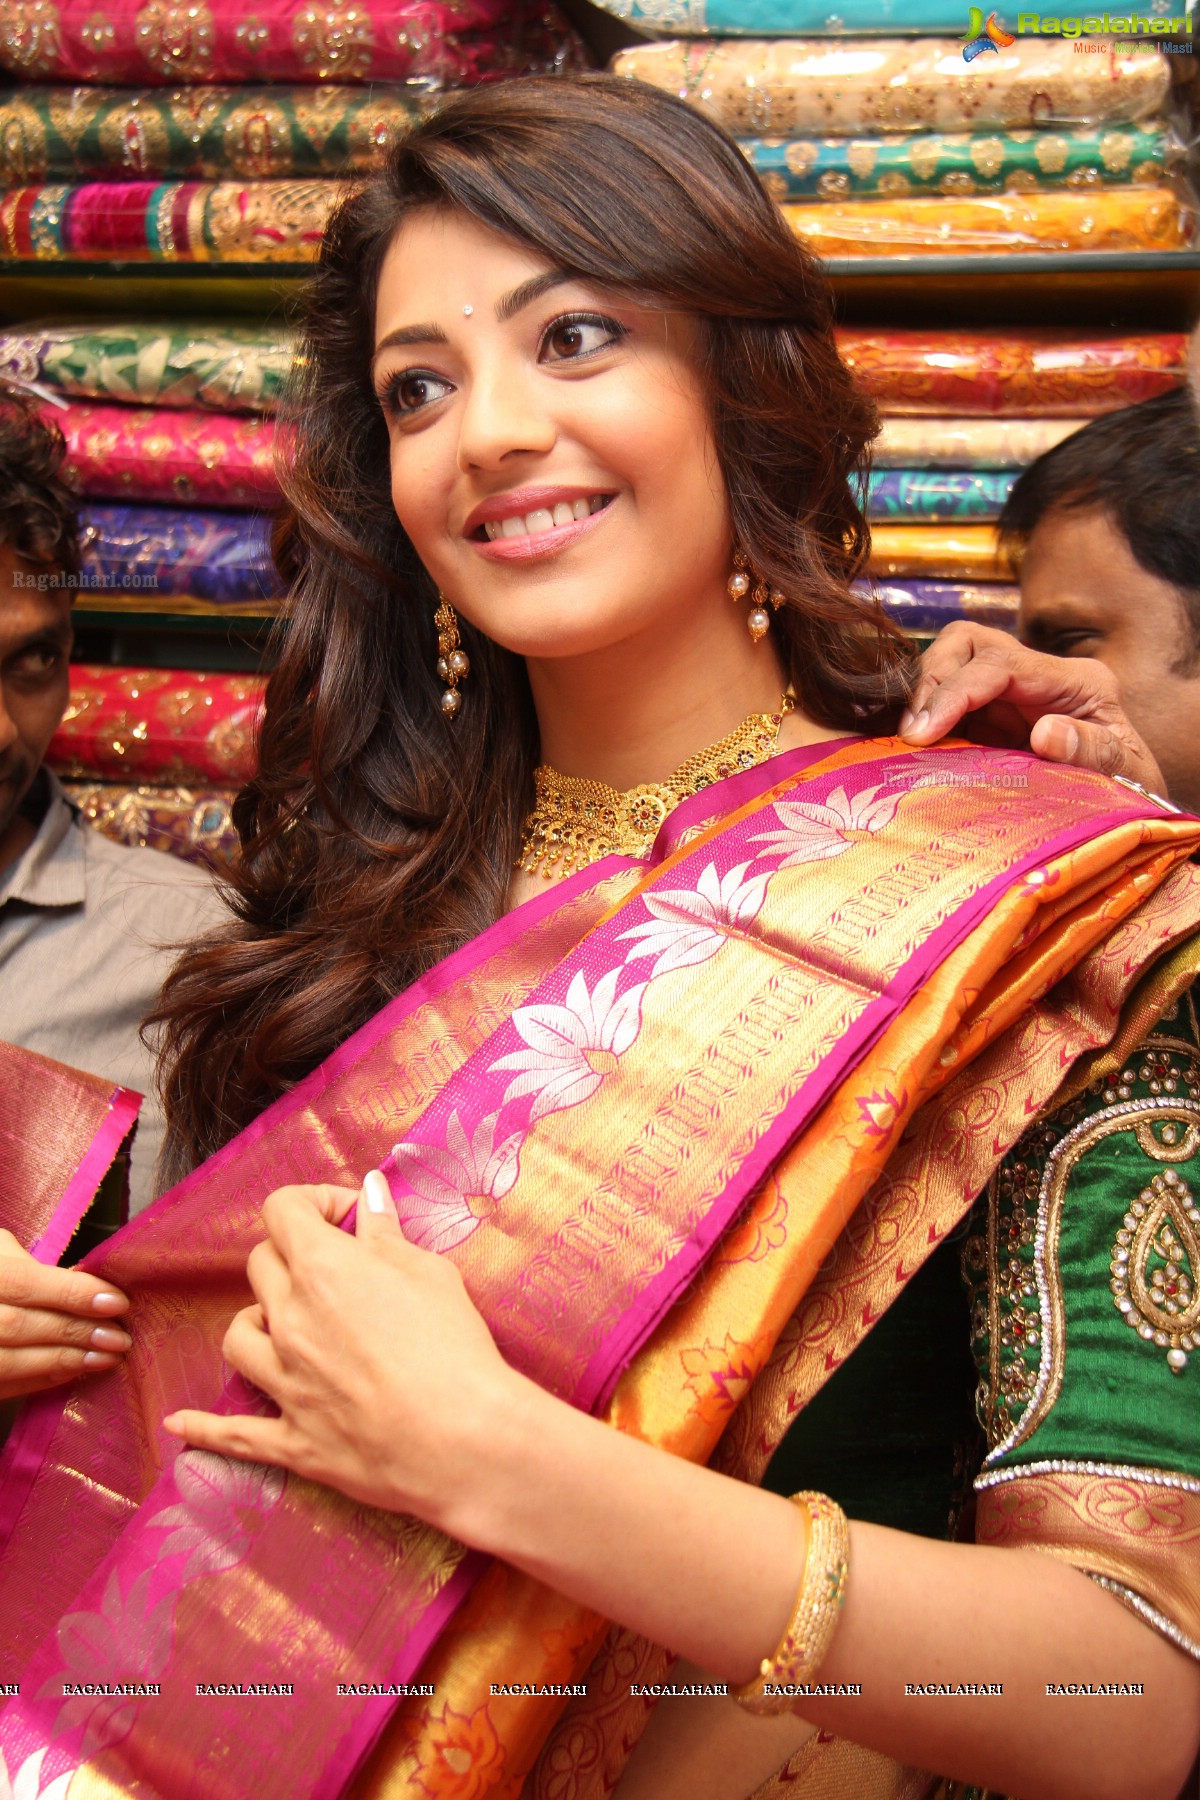 Kajal Aggarwal in Traditional Saree at Chennai Shopping Mall, Hyderabad, Images